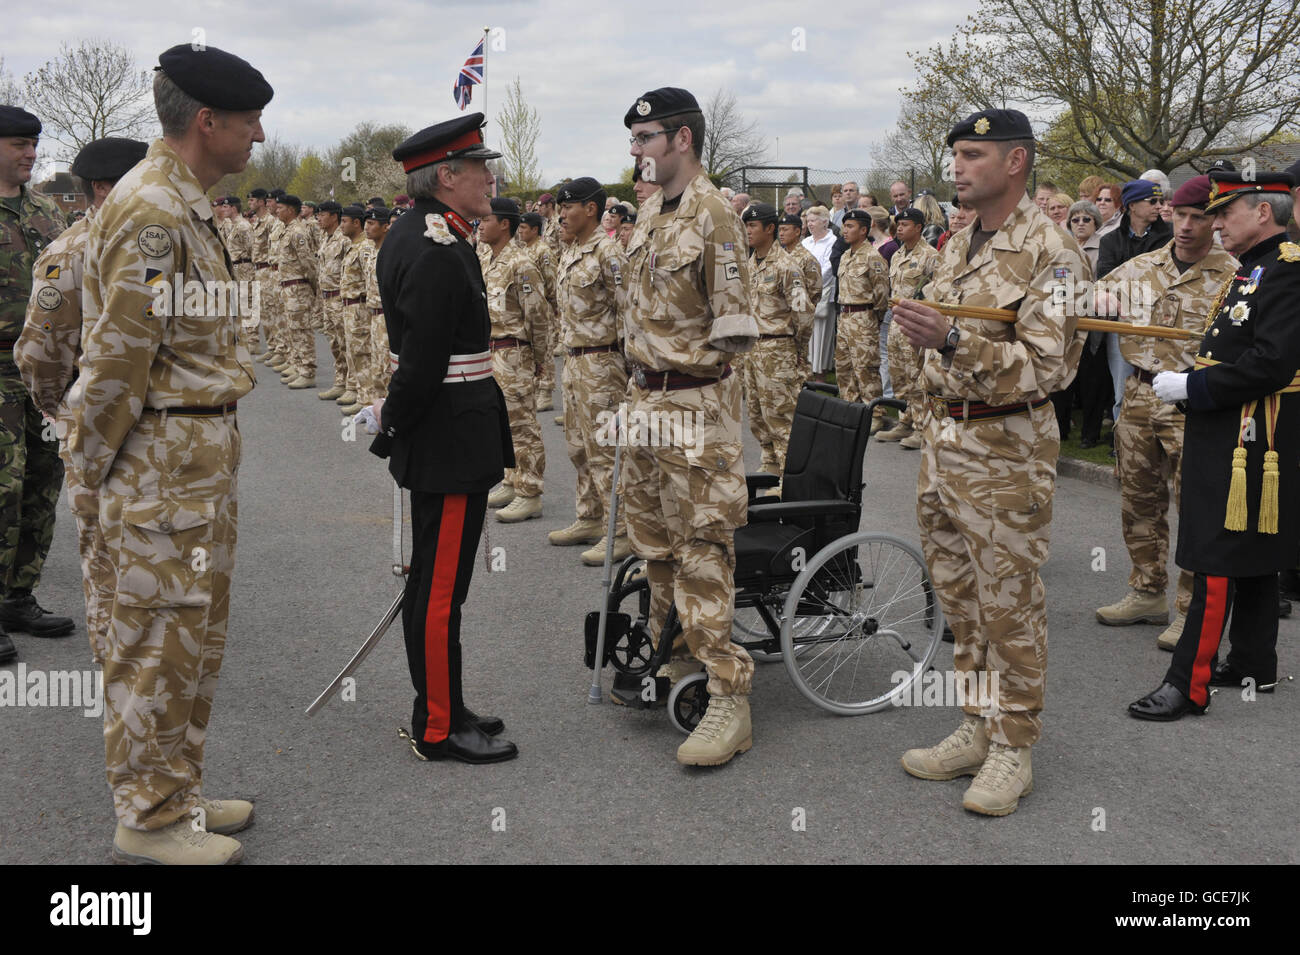 Lord Lieutenant Tim Stevenson überreicht Royal Engineer Sapper Ryan Seary, der seinen linken Arm und sein linkes Bein verloren hat, die Afghanistan Campaign Medal vor dem Didcot Civic Center nach einem marsch durch die Straßen von Didcot, Oxfordshire, wo Tausende von Menschen die Soldaten unterstützten. Stockfoto